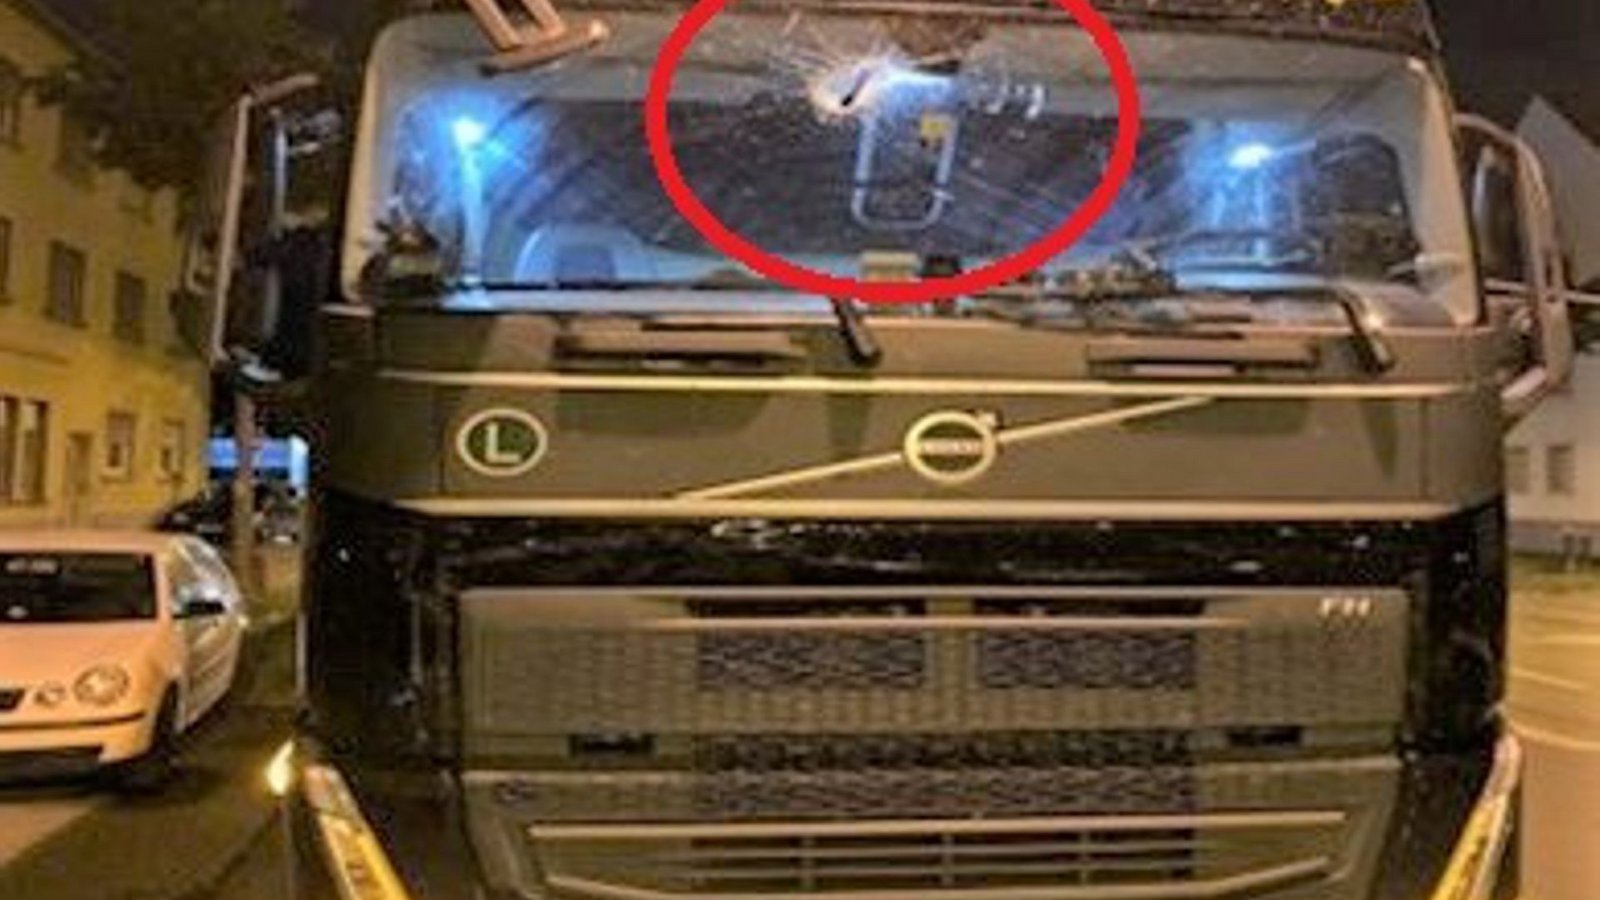 Der Unbekannte schleuderte einen Zimmermannshammer gegen die Frontscheibe des Lastwagens.Foto: Polizeipräsidium Mannheim